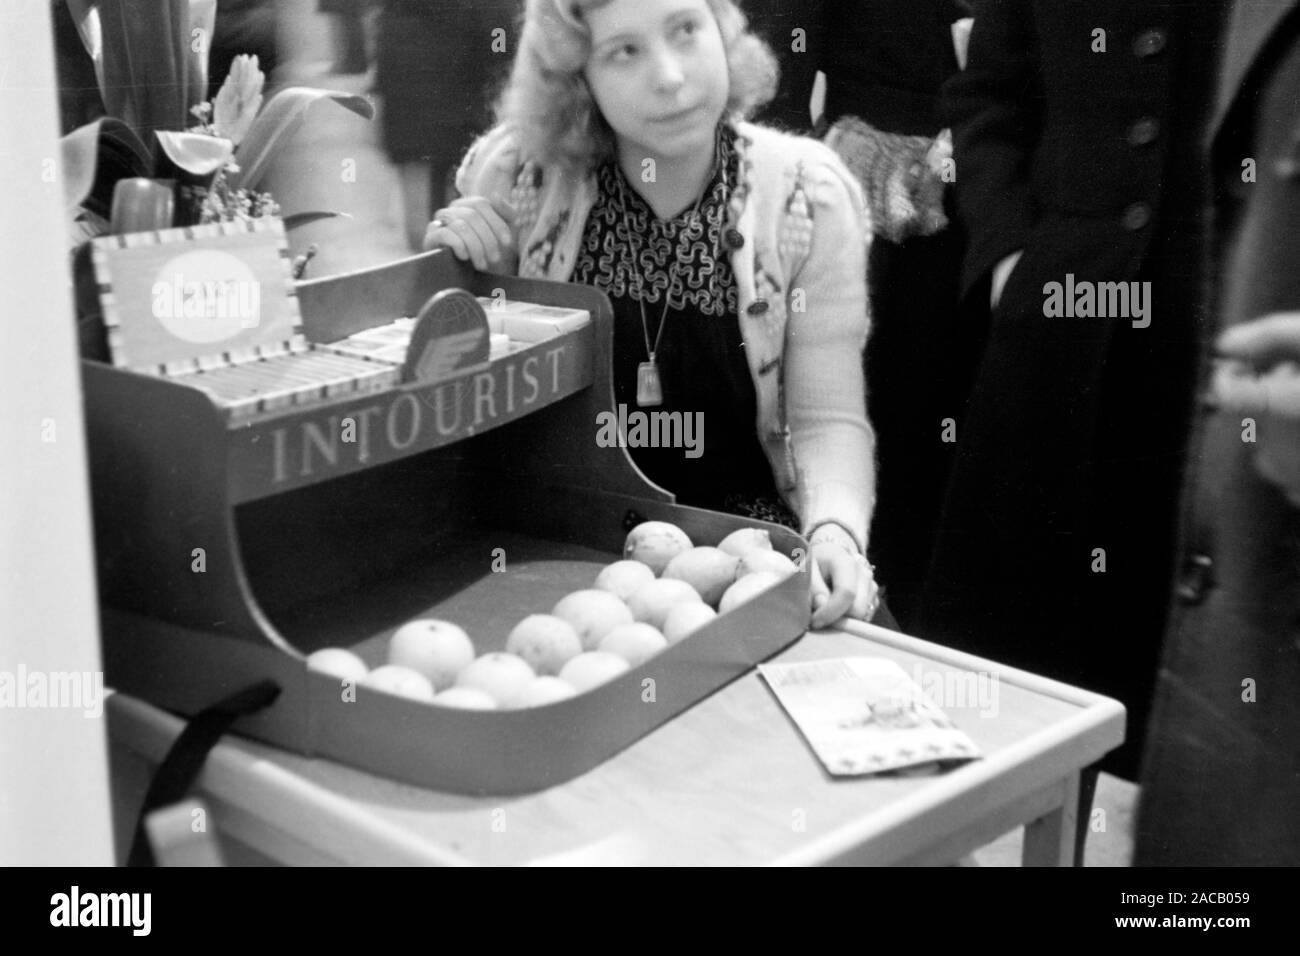 Eine Frau stellt ein Produkt der Intourist vor, Leipzig Deutschland 1949. Eine Frau ist shoowing aus ein Produkt der Intourist, Leipzig Deutschland 1949. Stockfoto